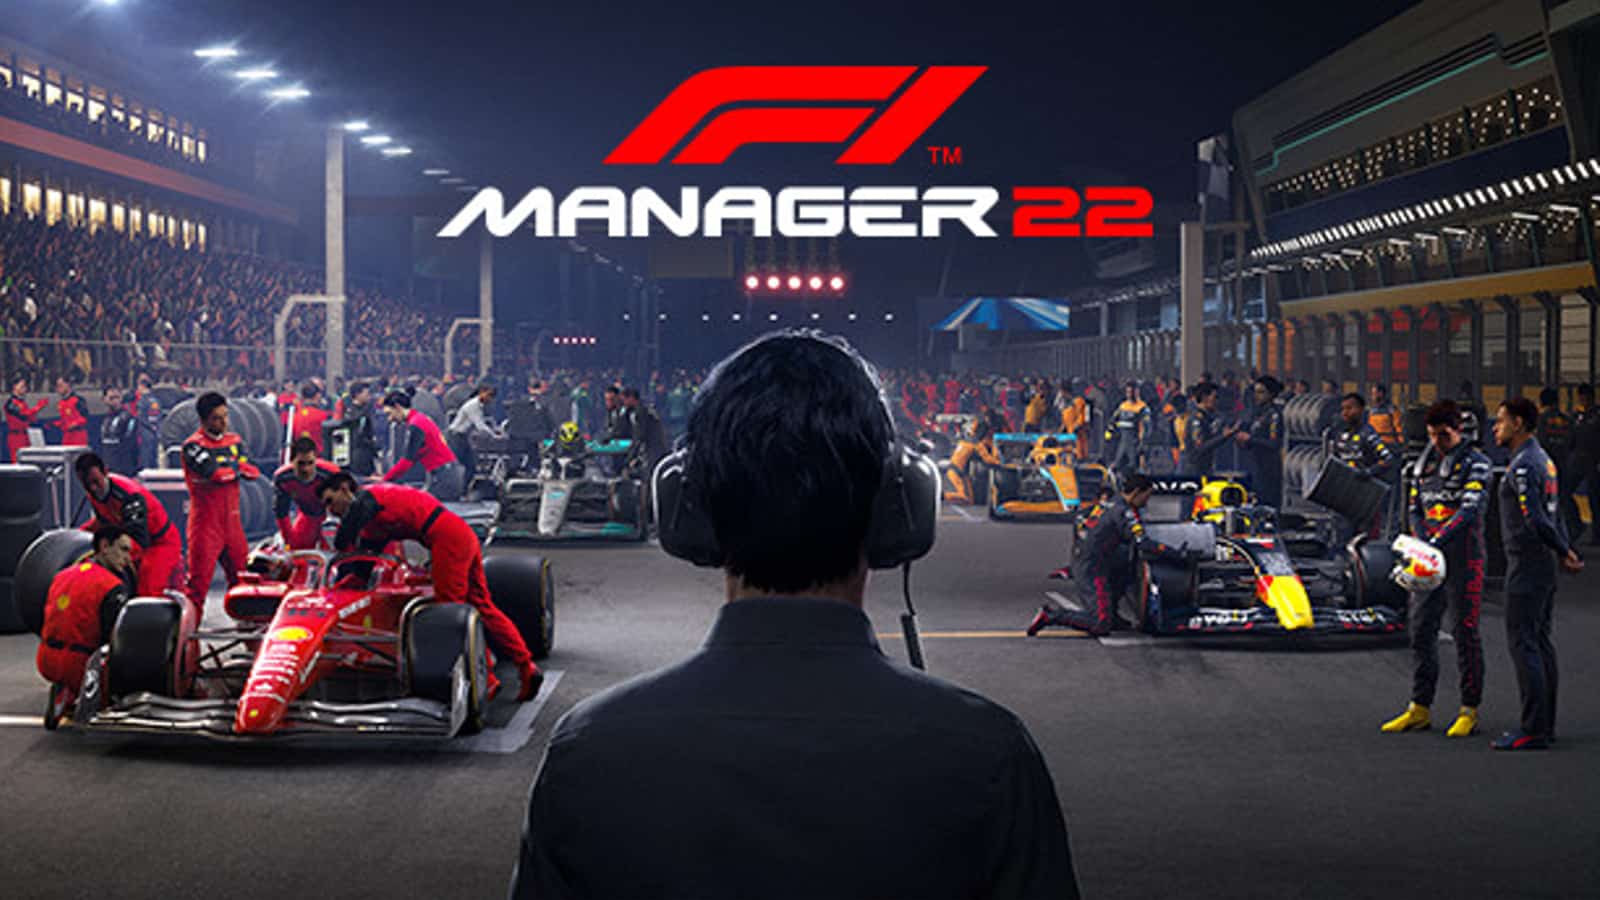 Celf hyrwyddo F1 Manager 2022